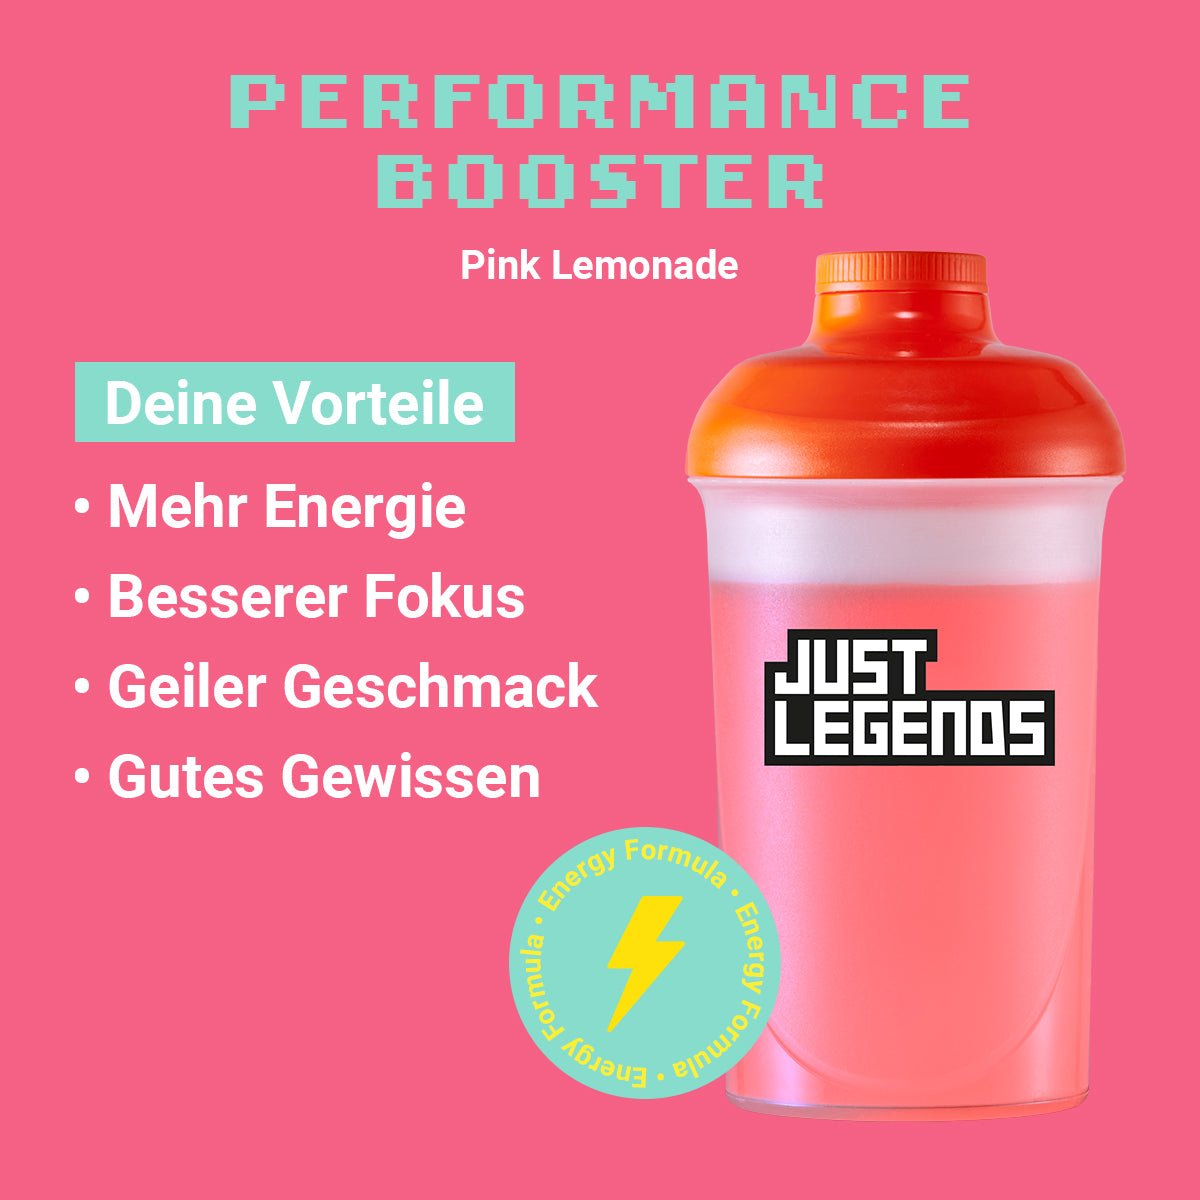 Just Legends Performance Booster Pink Lemonade | Funktionaler, veganer Performance Booster auf Pulverbasis ohne Zucker, mit wenig Kalorien, vielen Vitaminen und natürlichen Aromen.